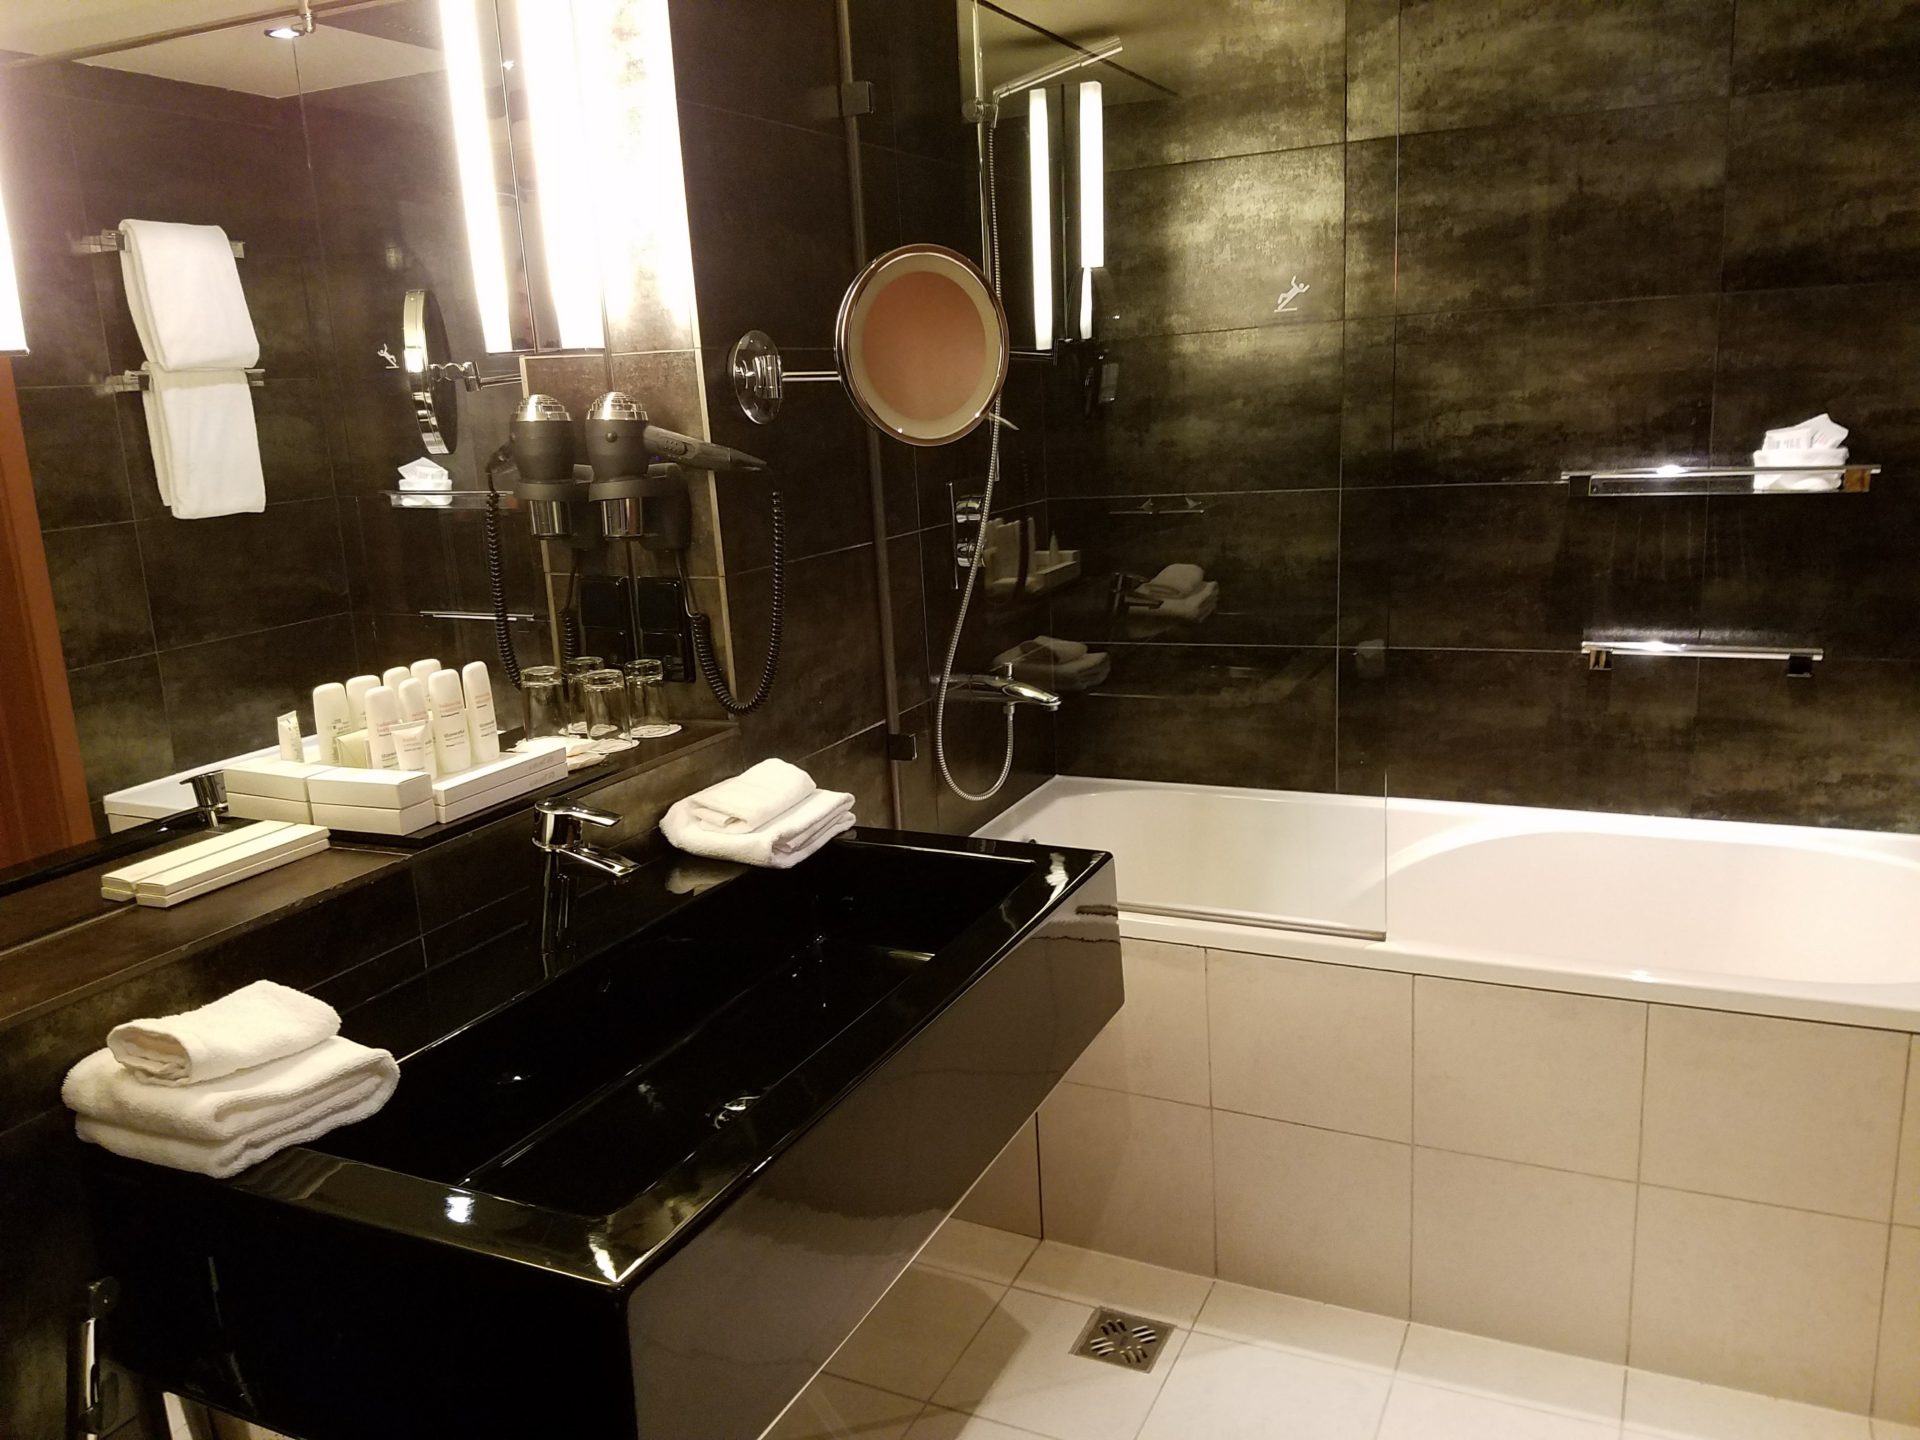 a bathroom with a black sink and bathtub